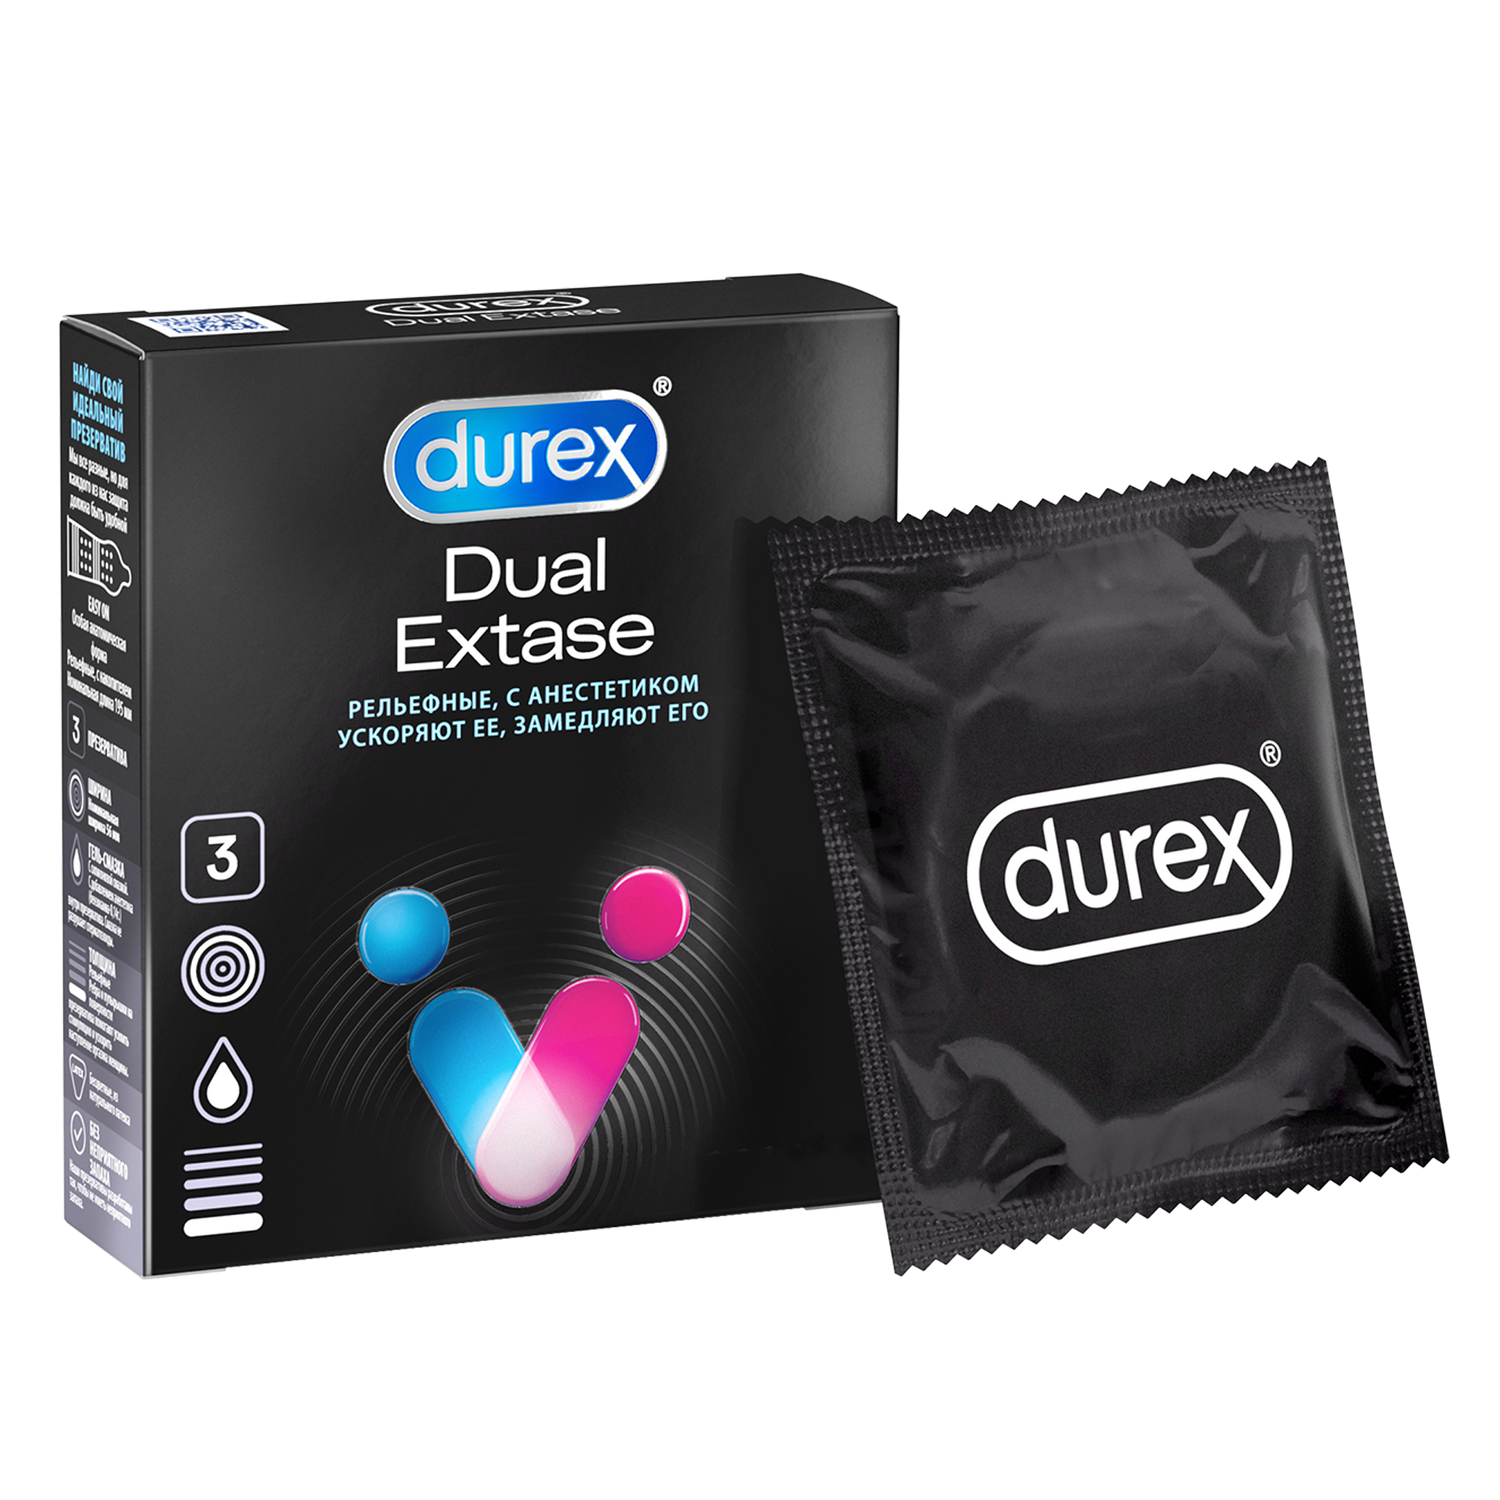 Презервативы Durex Dual Extase, рельефные с анестетиком, 3 шт. презервативы с точками luxe тринадцатый раунд 3 шт 3 уп